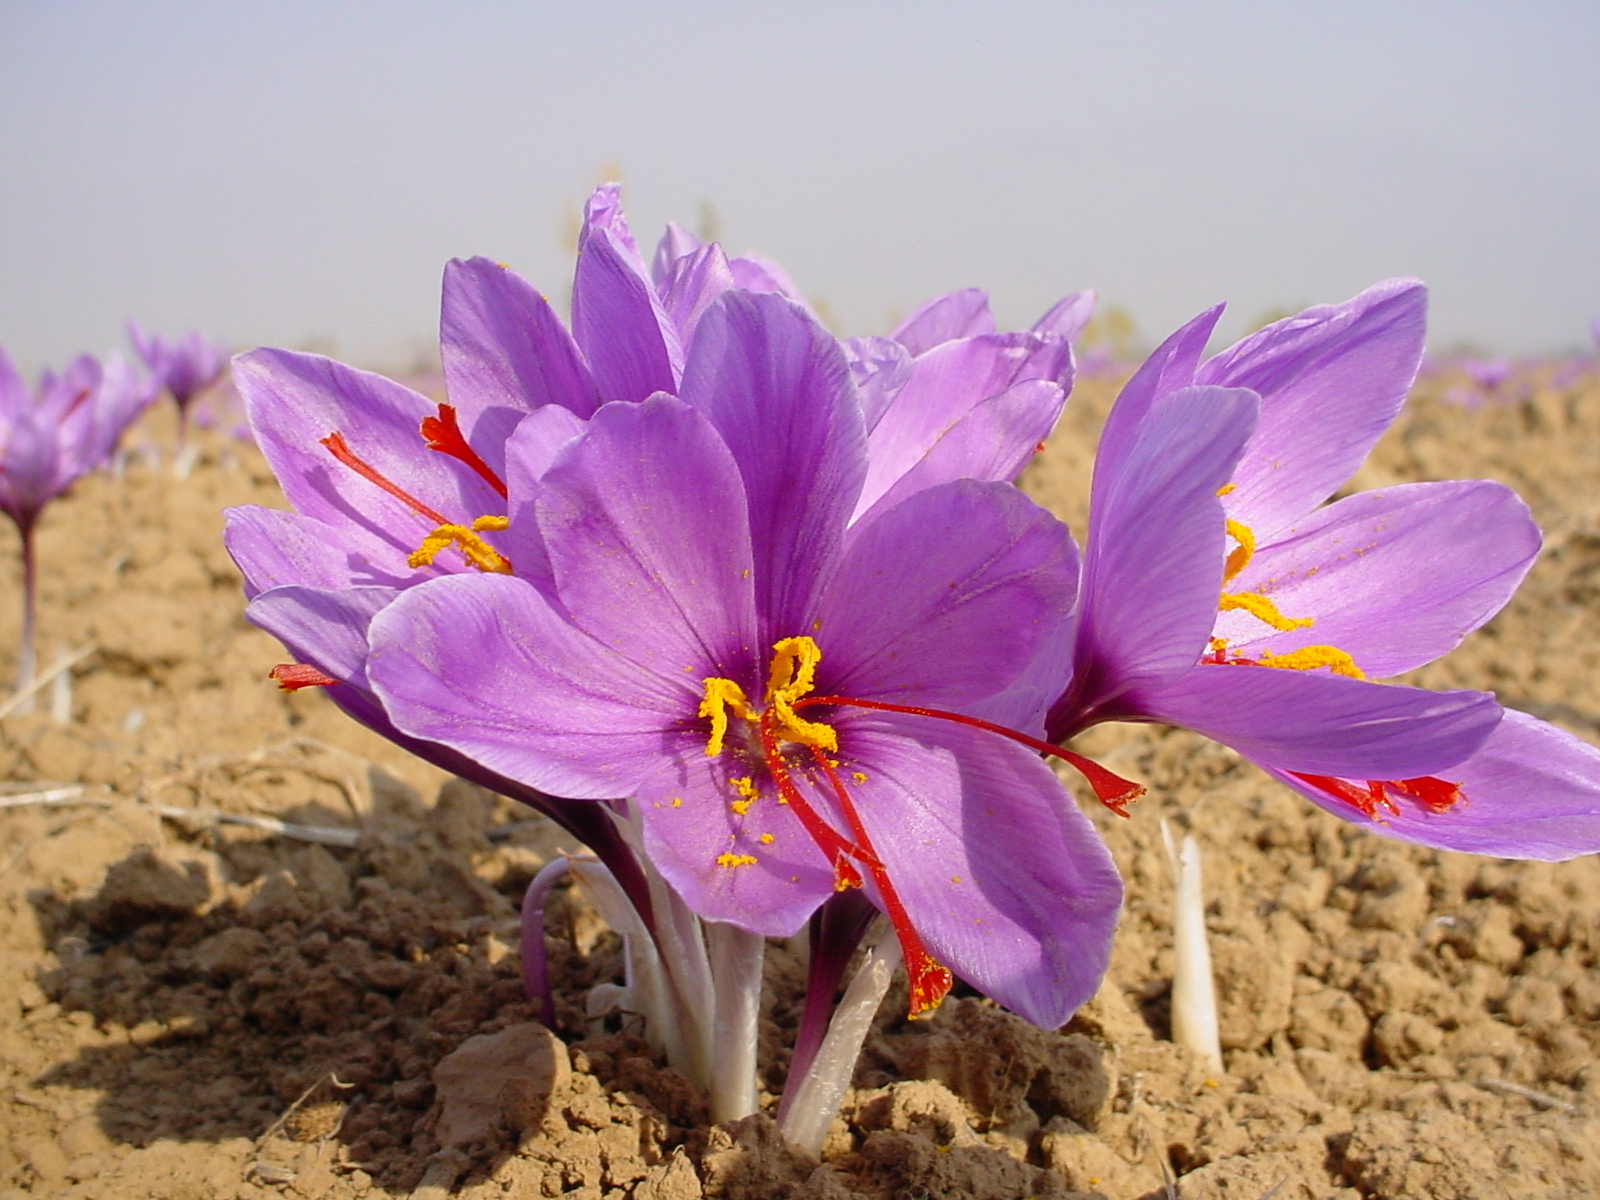 Iran saffron export